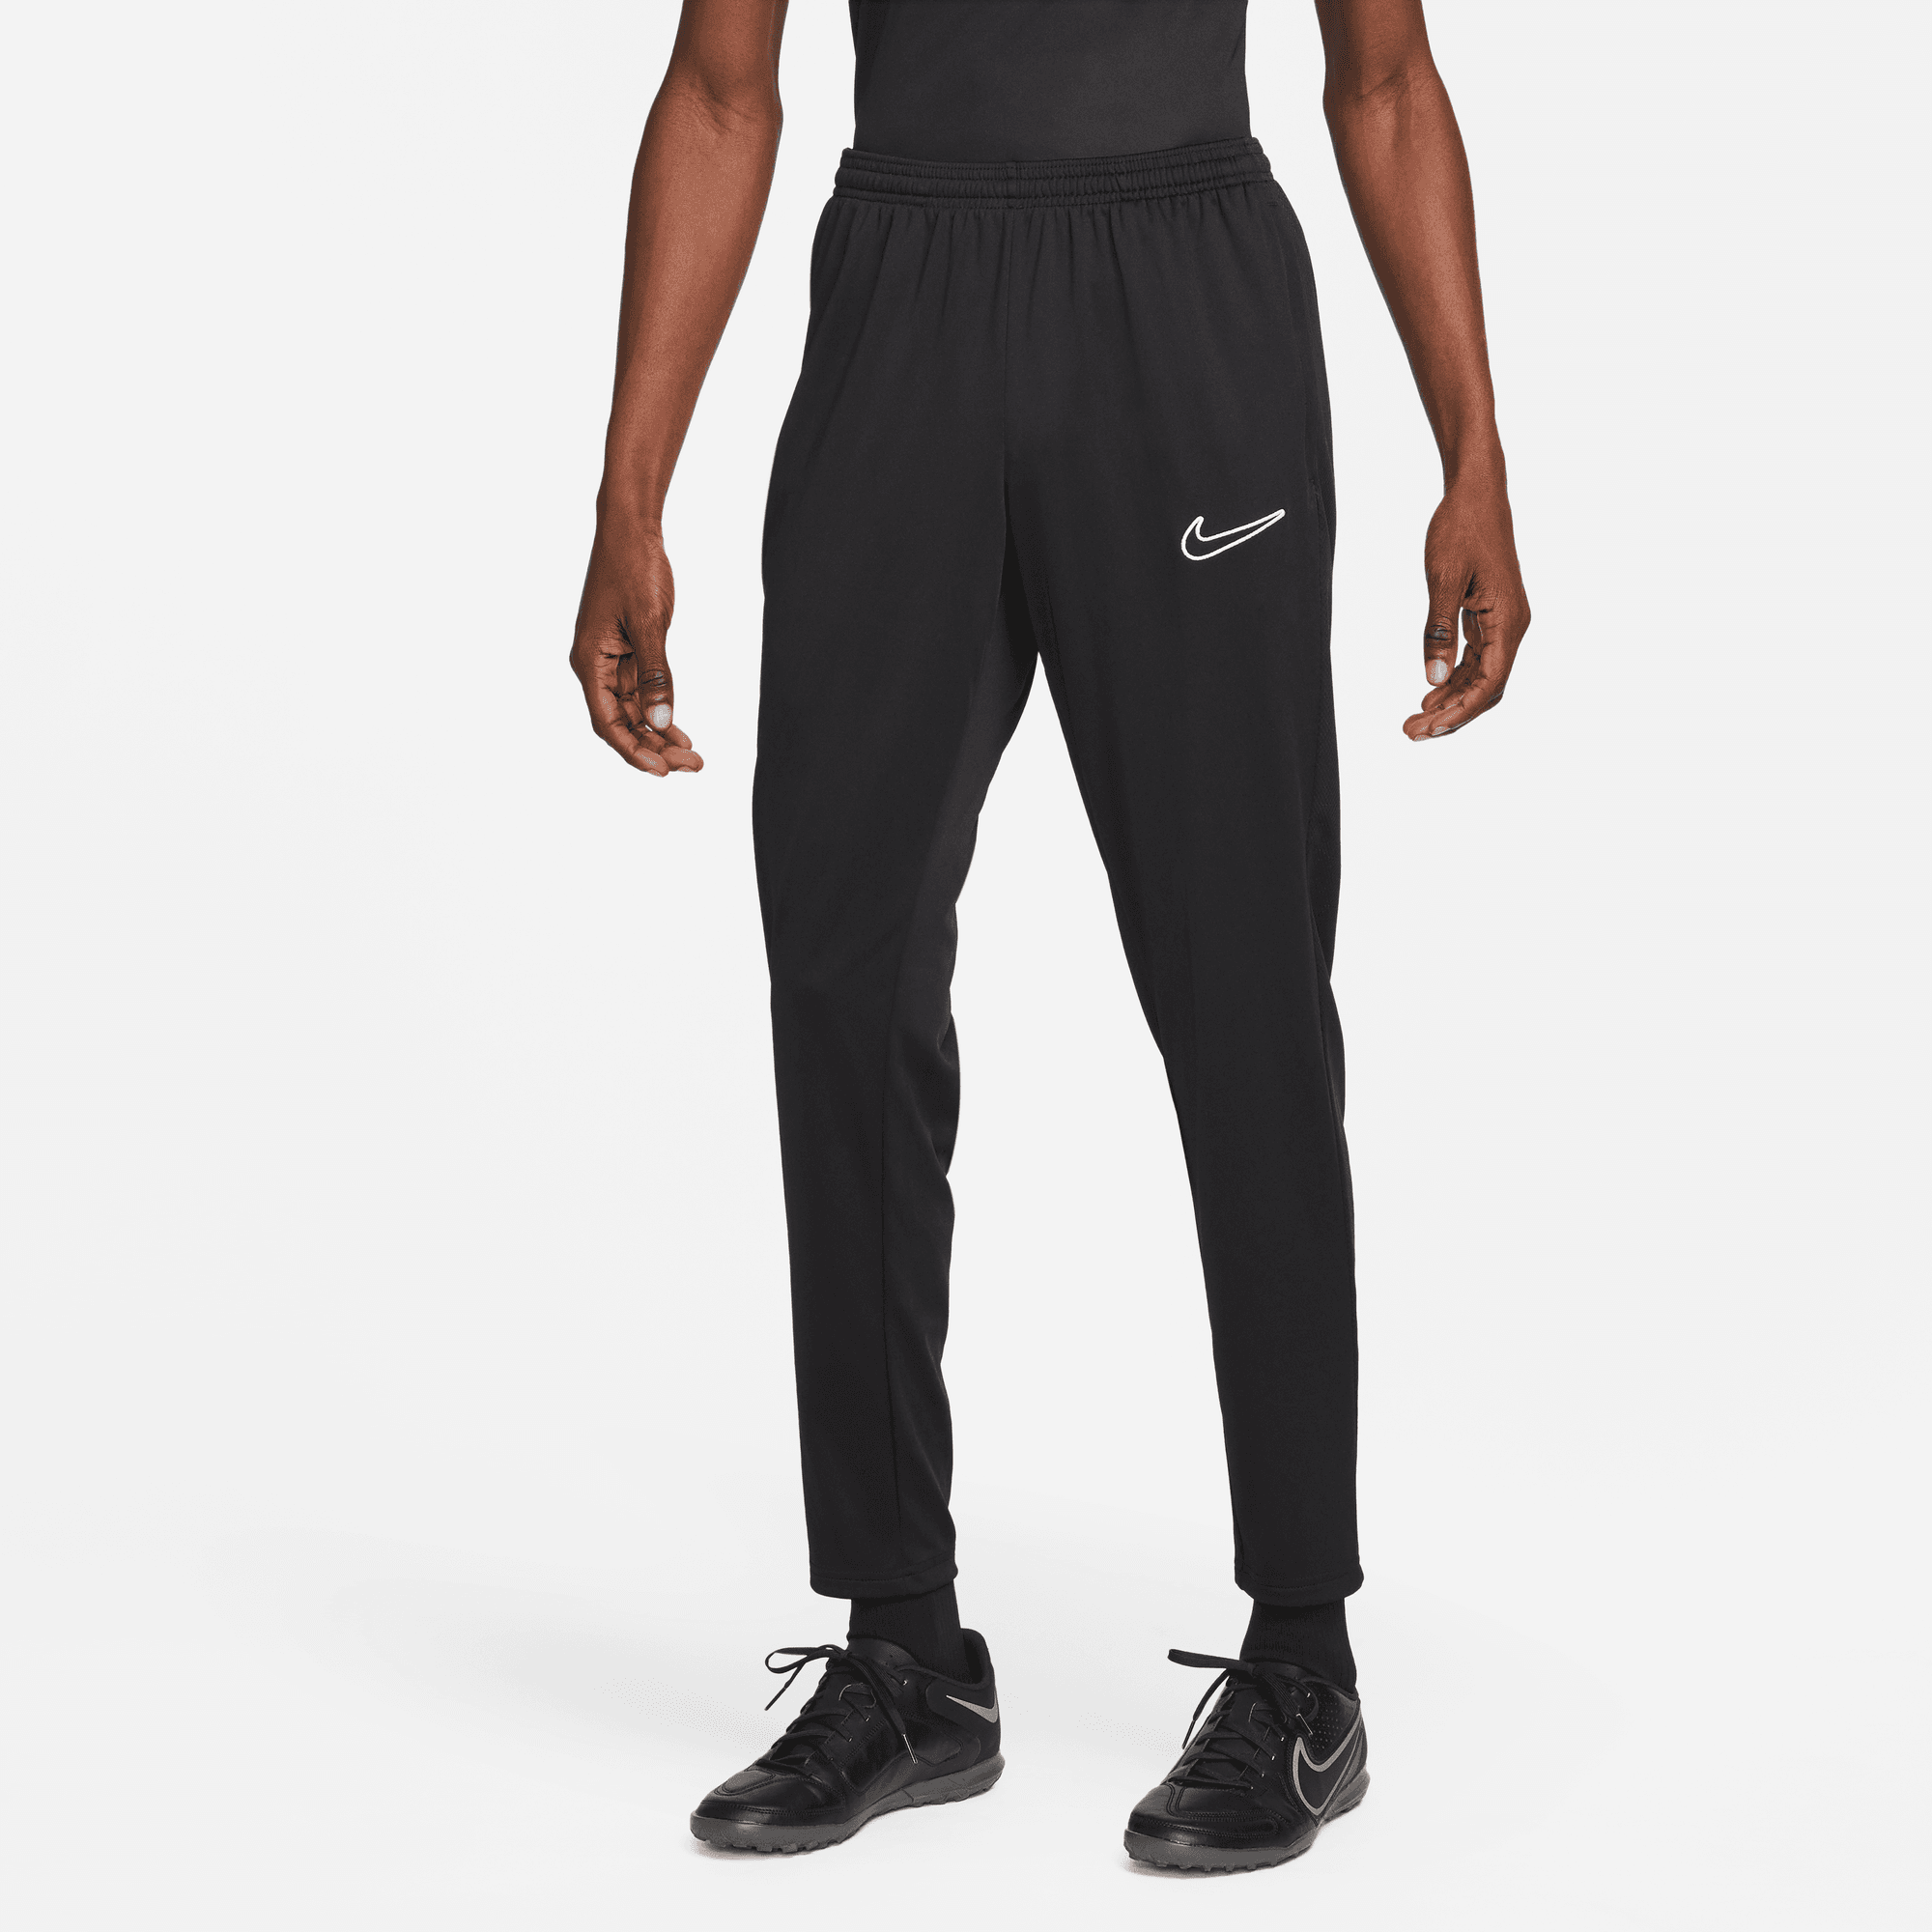 stefanssoccer.com:Nike Dri-Fit Academy Pants Black